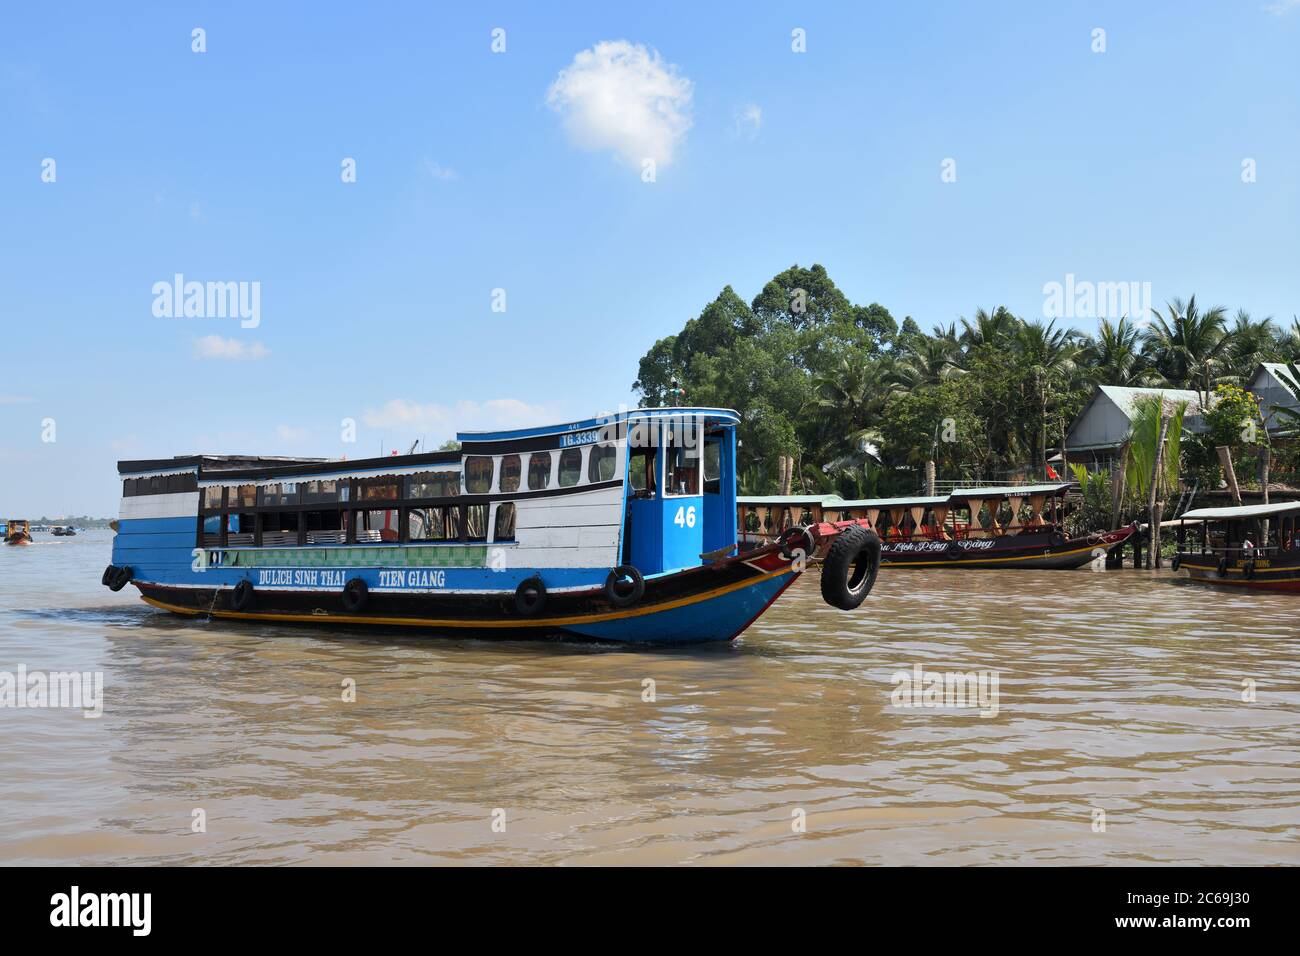 Barche a motore spazzatura che ferry passeggeri e visitatori sul massiccio silt fiume Mekong delta da My Tho in Vietnam, Asia Foto Stock